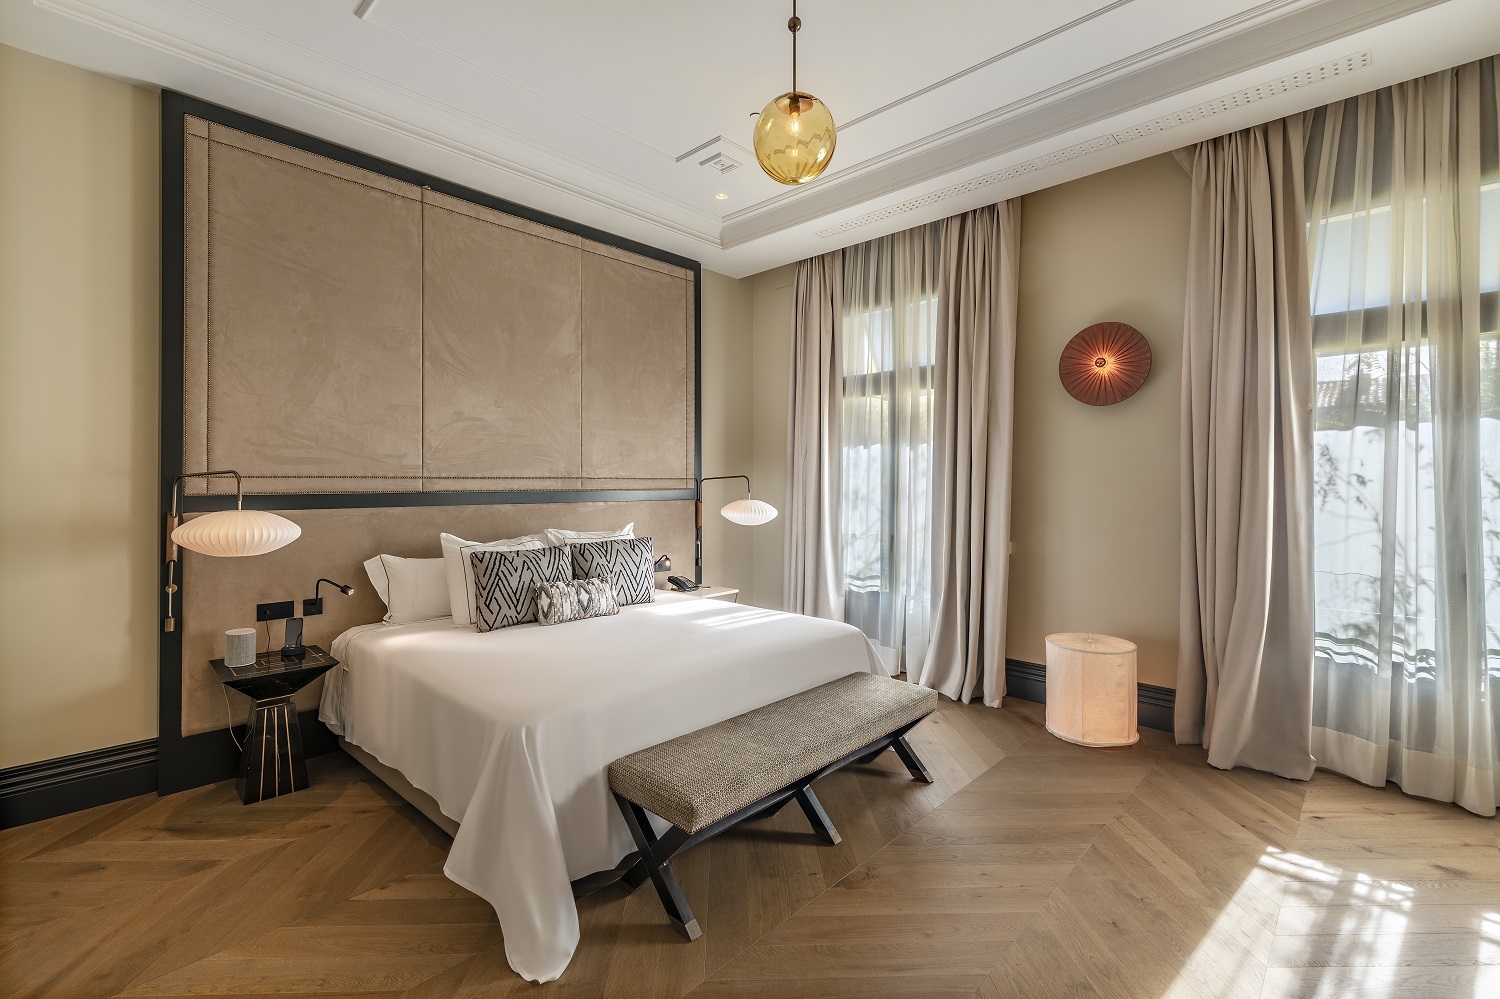 Pasar una noche romántica con tu pareja o de desconexión en este céntrico hotel de Madrid está al alcance de tu mano.